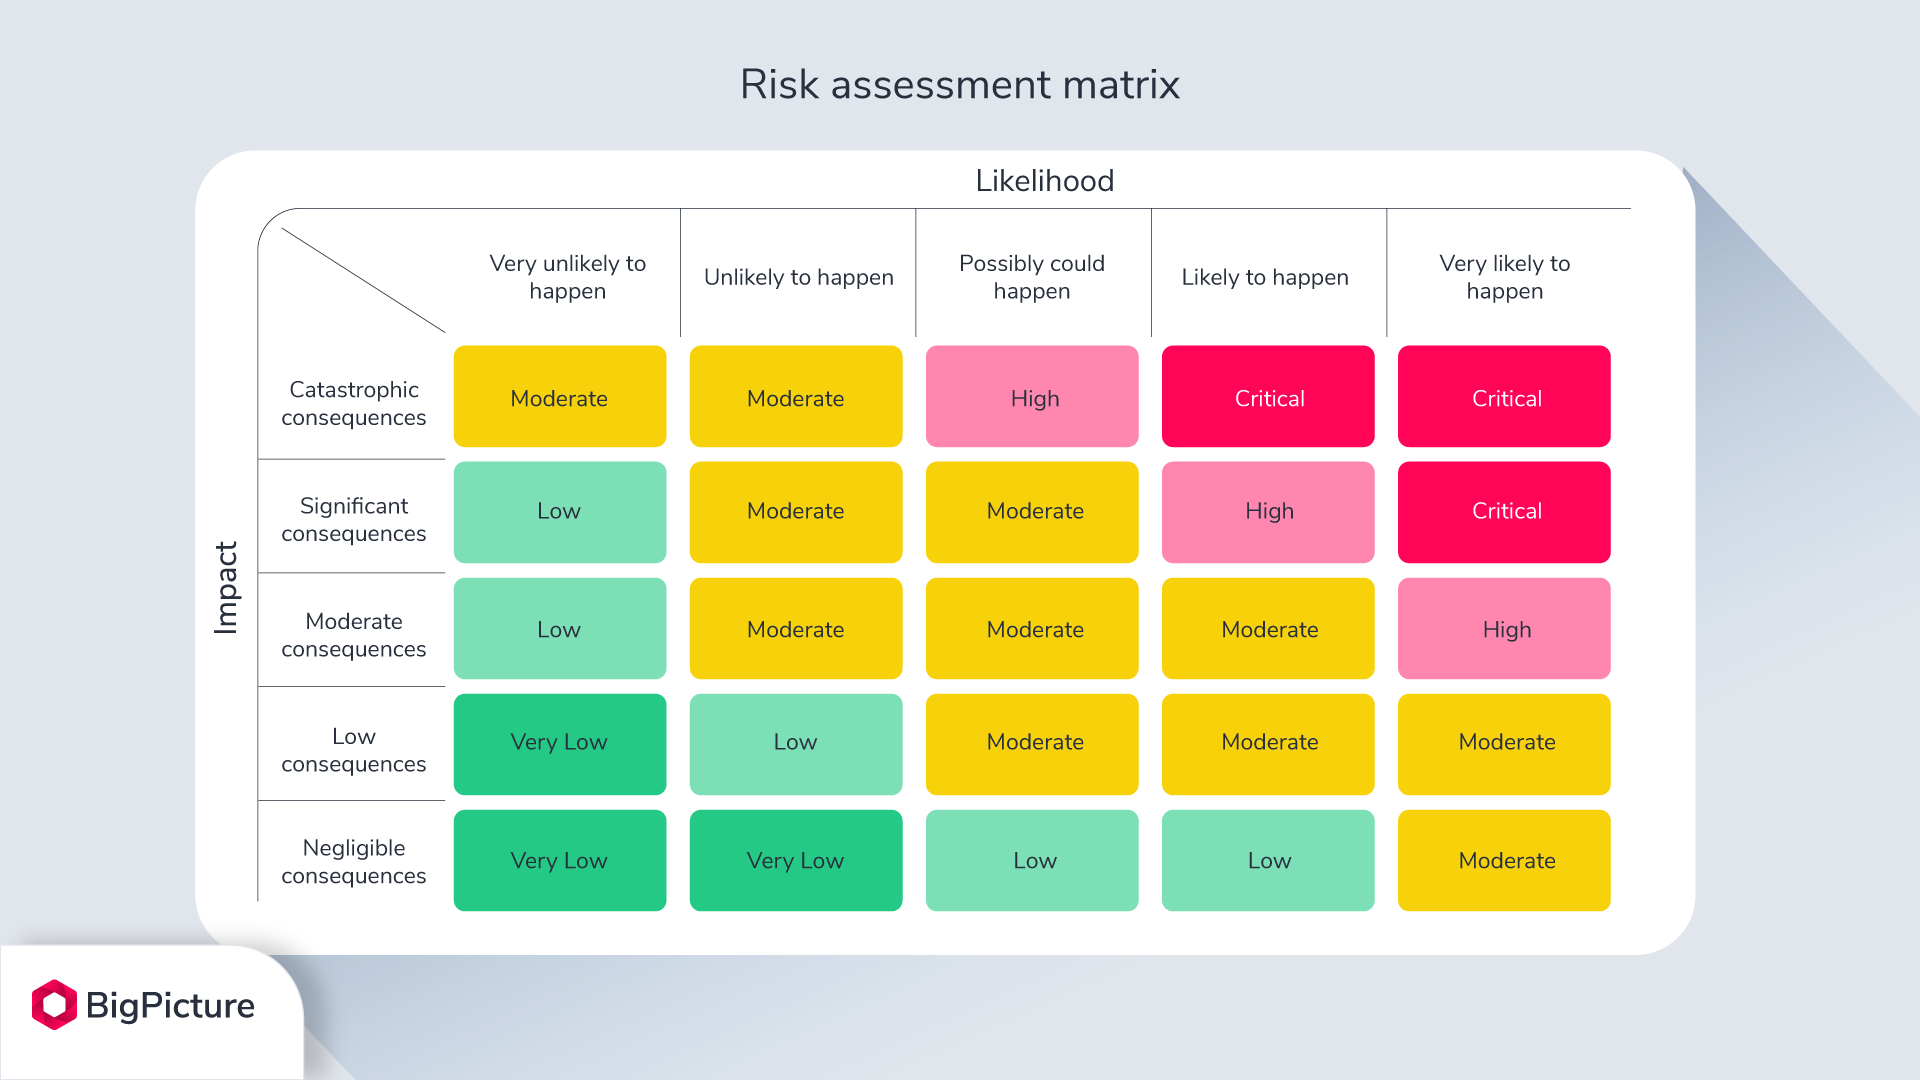 Risk assessment matrix in color.